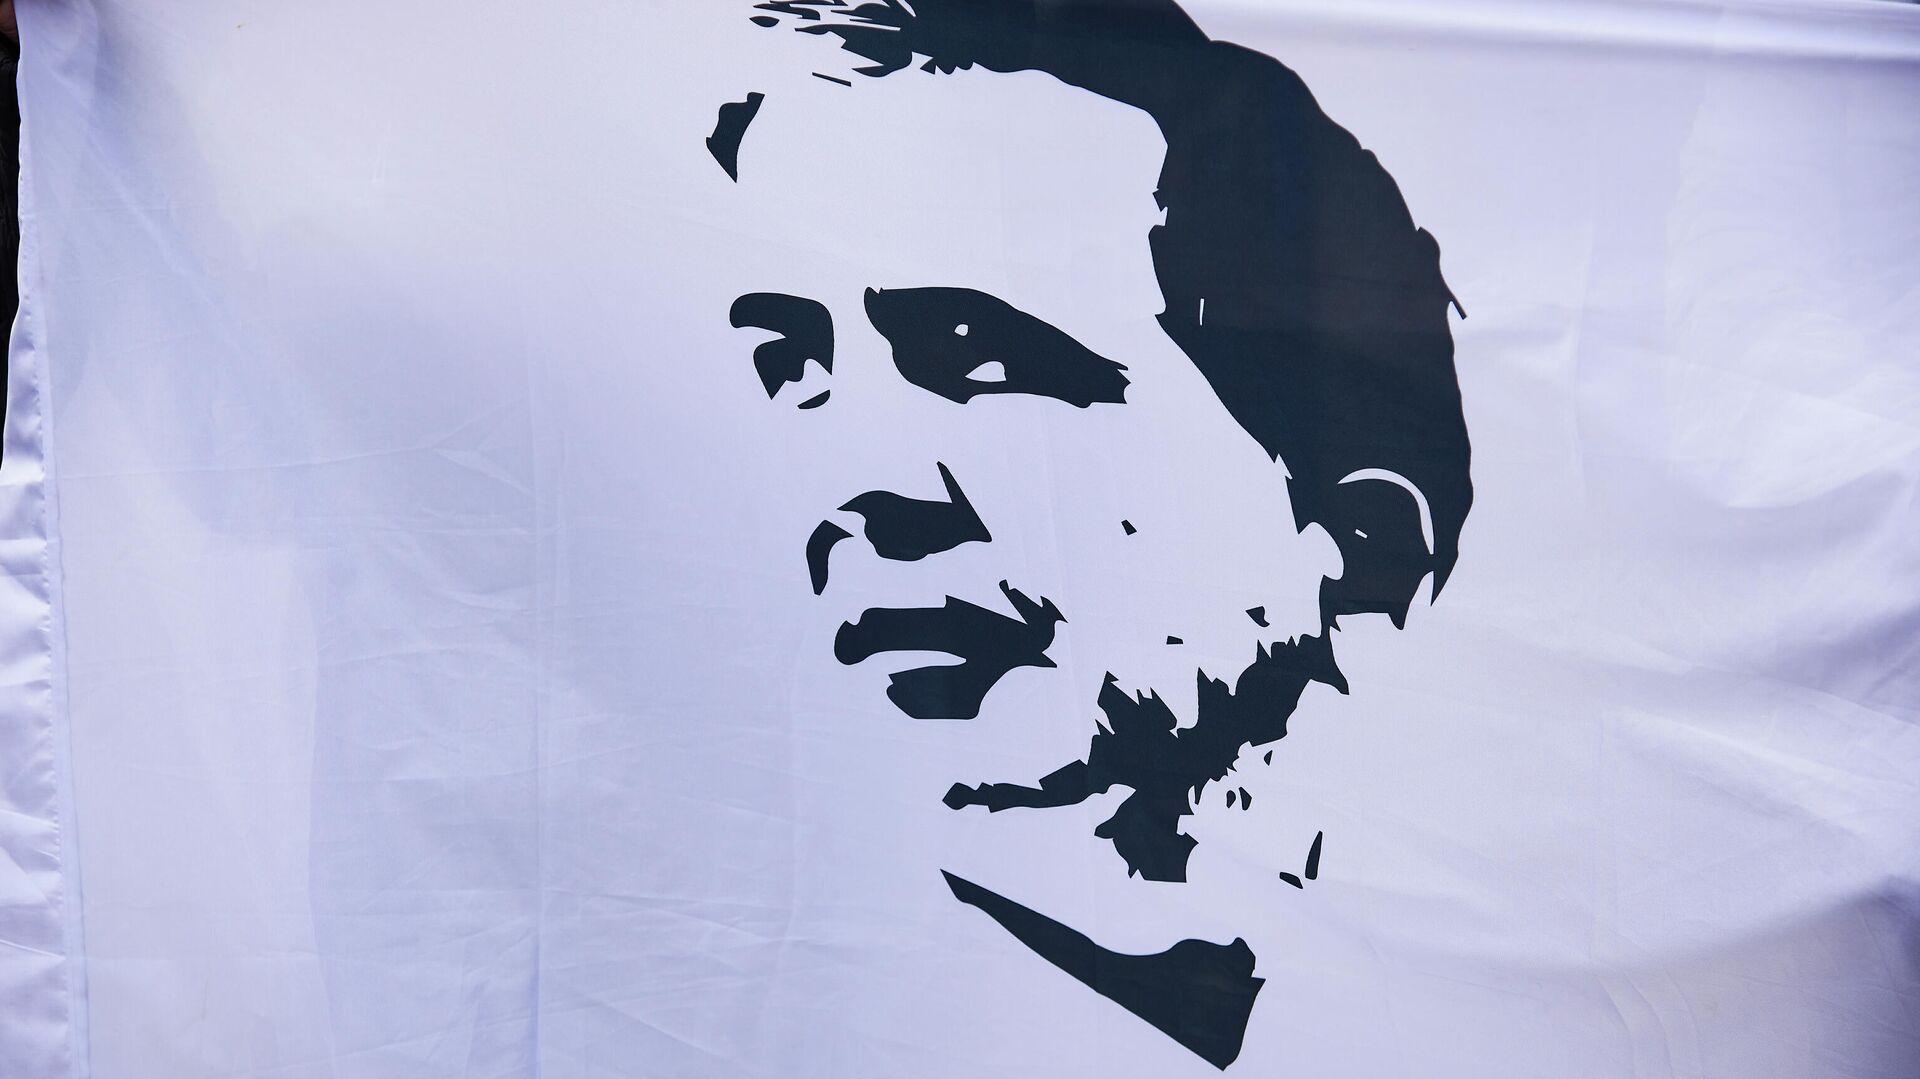 Портрет Михаила Саакашвили на плакате протестующих сторонников ЕНД - Sputnik Грузия, 1920, 13.11.2021